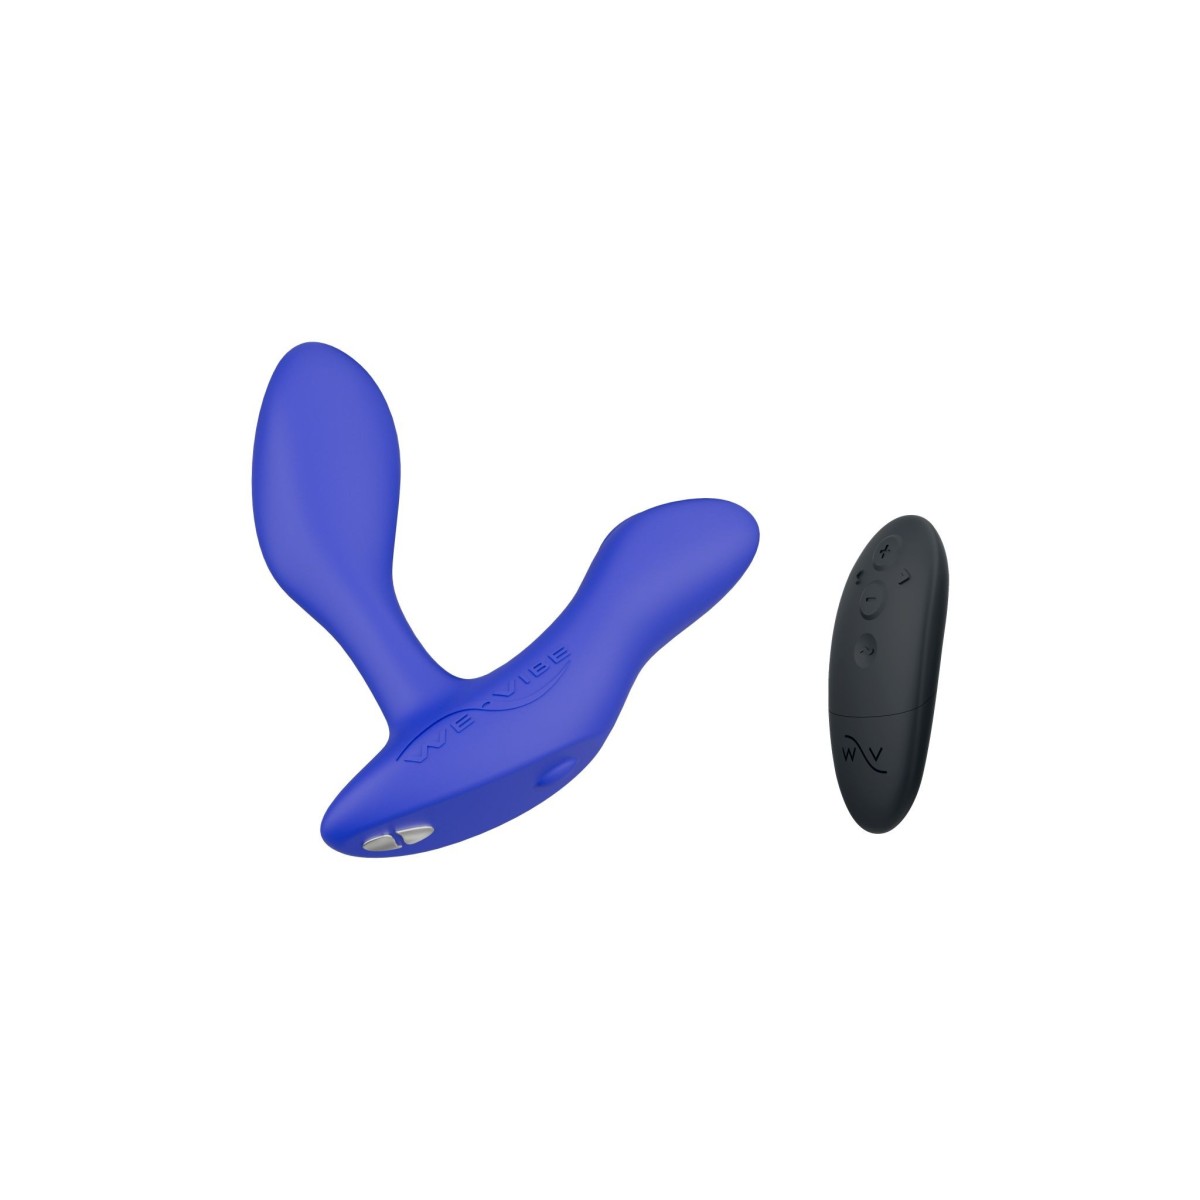 Vibrační stimulátor prostaty We-Vibe Vector+ Royal Blue, stimulátor prostaty a hráze ovládaný dálkovým ovladačem nebo mobilní aplikací